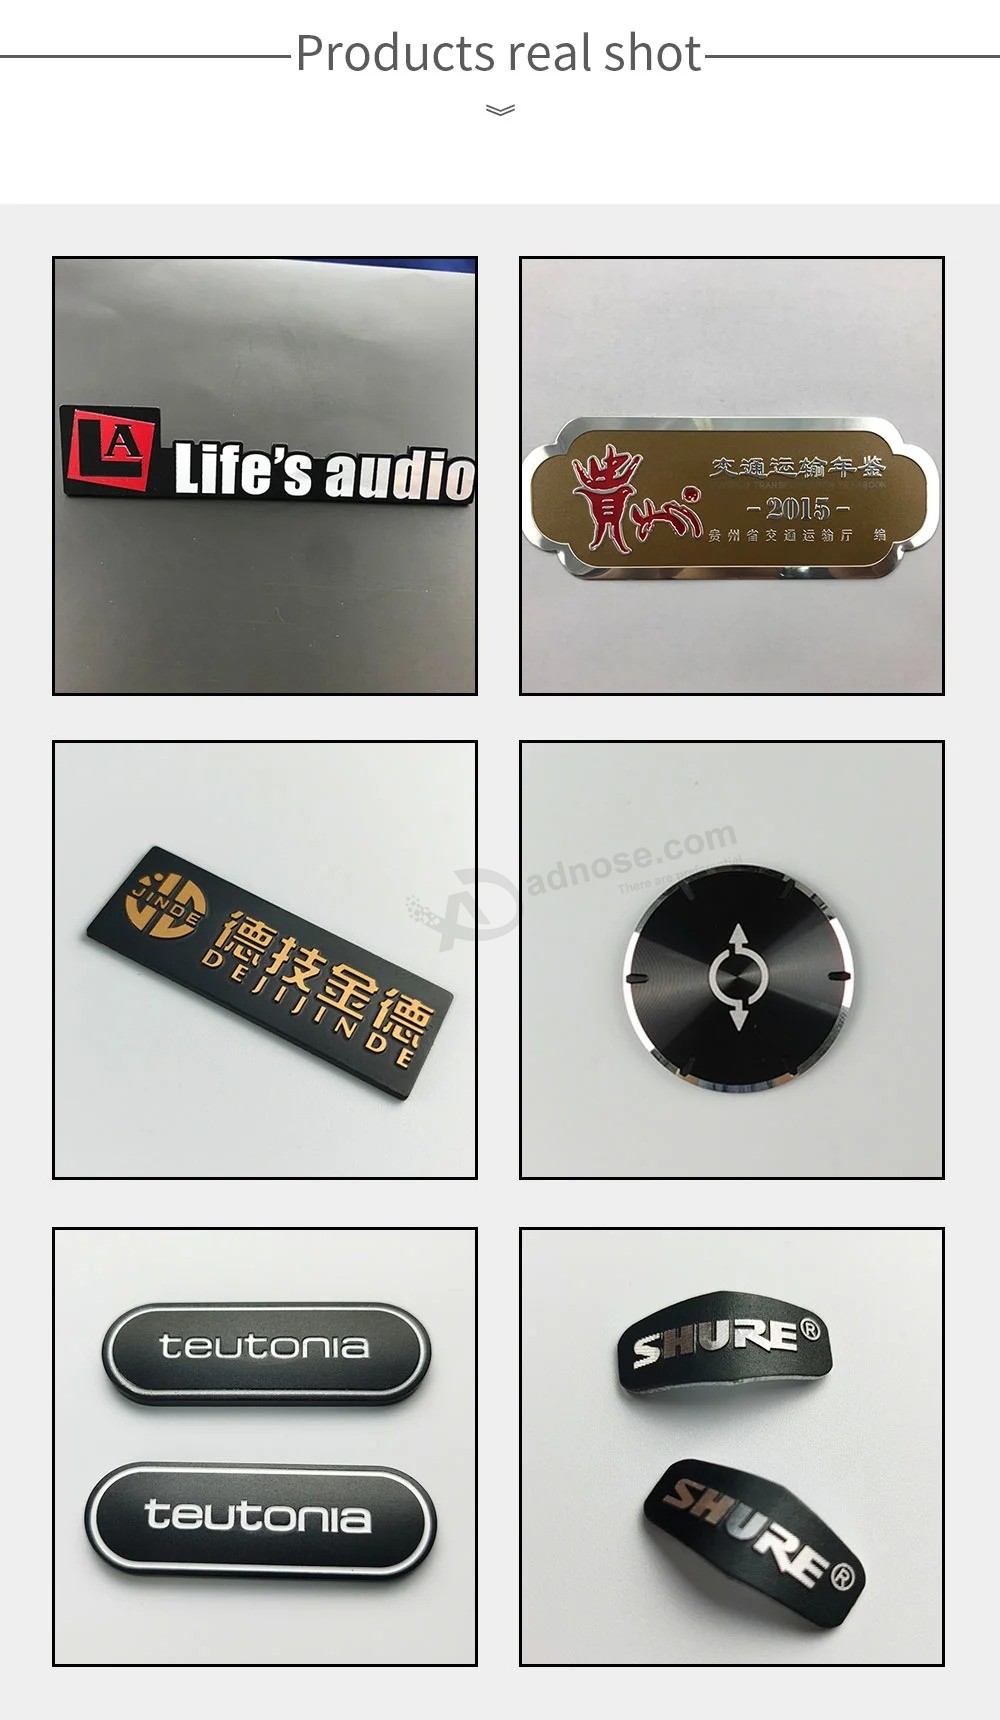 Benutzerdefinierte Audio-Etiketten Klimaanlage Etiketten Möbel Etiketten High Light Etiketten Aluminium Etiketten